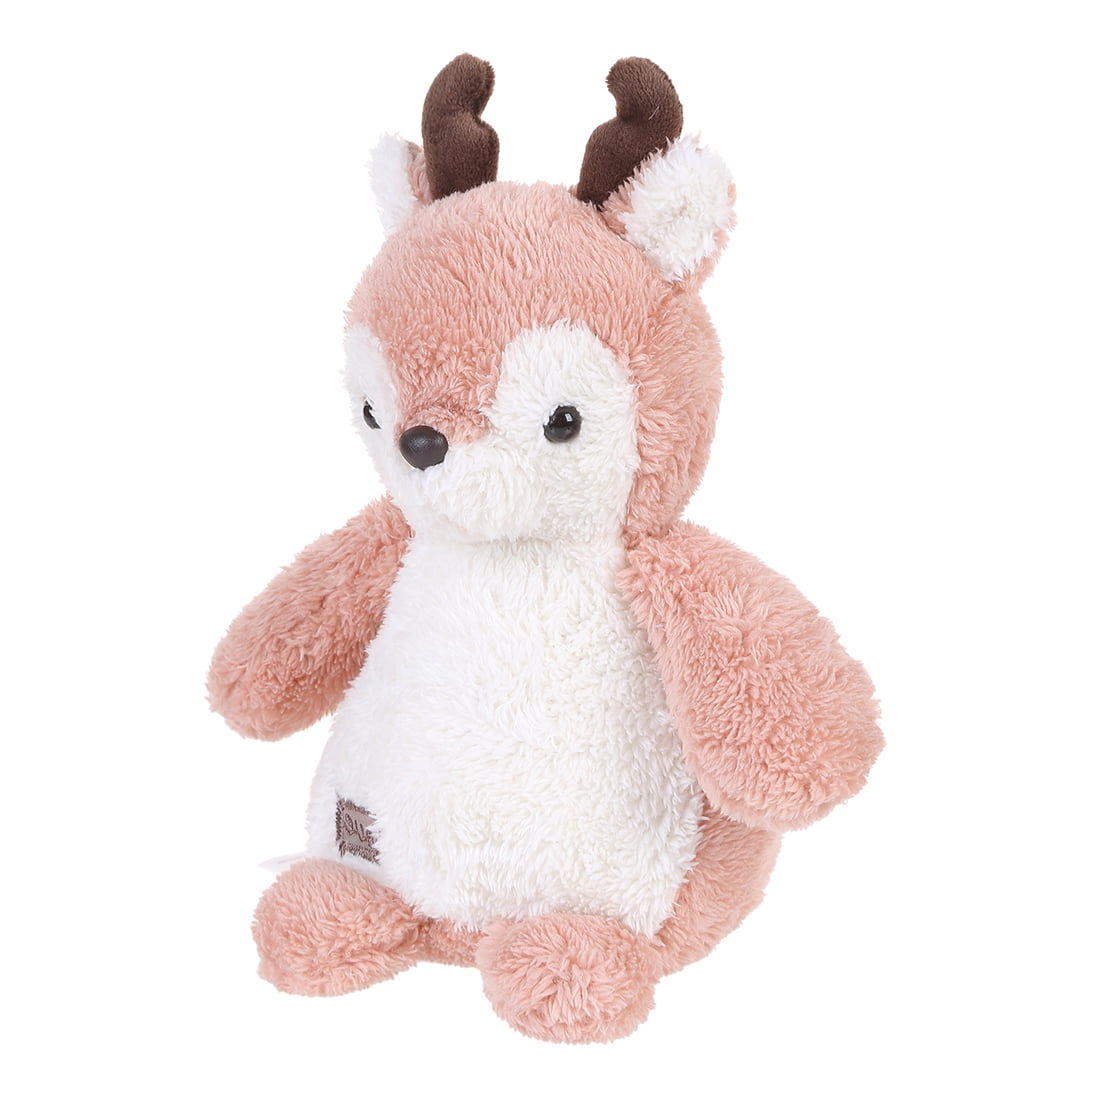  MINISO  Stuffed Animal Deer Plush  Toy Anime Plush  Toy Plush  